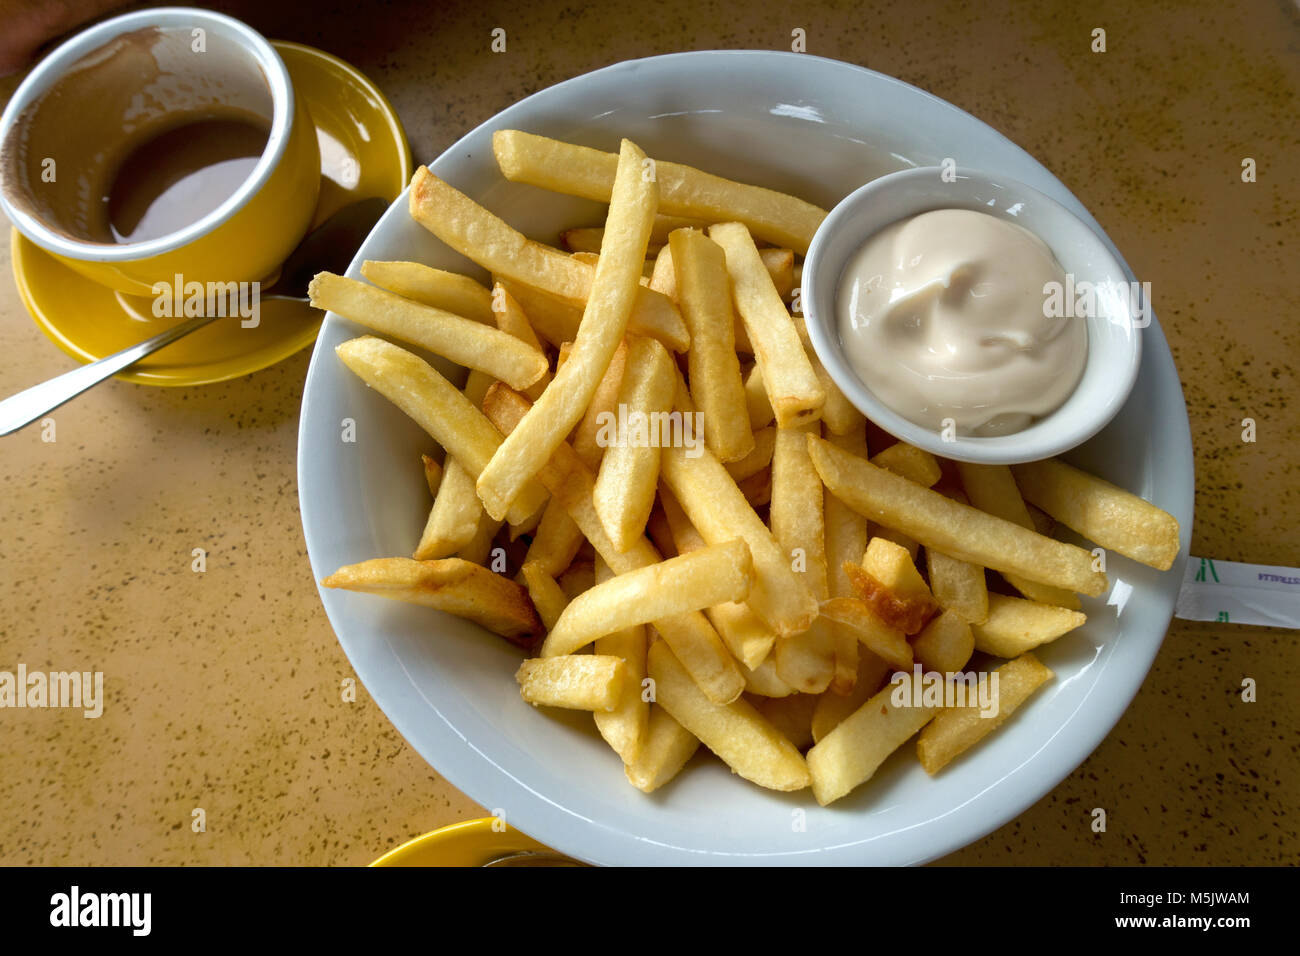 Chips australiens chauds. La bonté dorée croquante avec un côté de mayonnaise piquante Banque D'Images